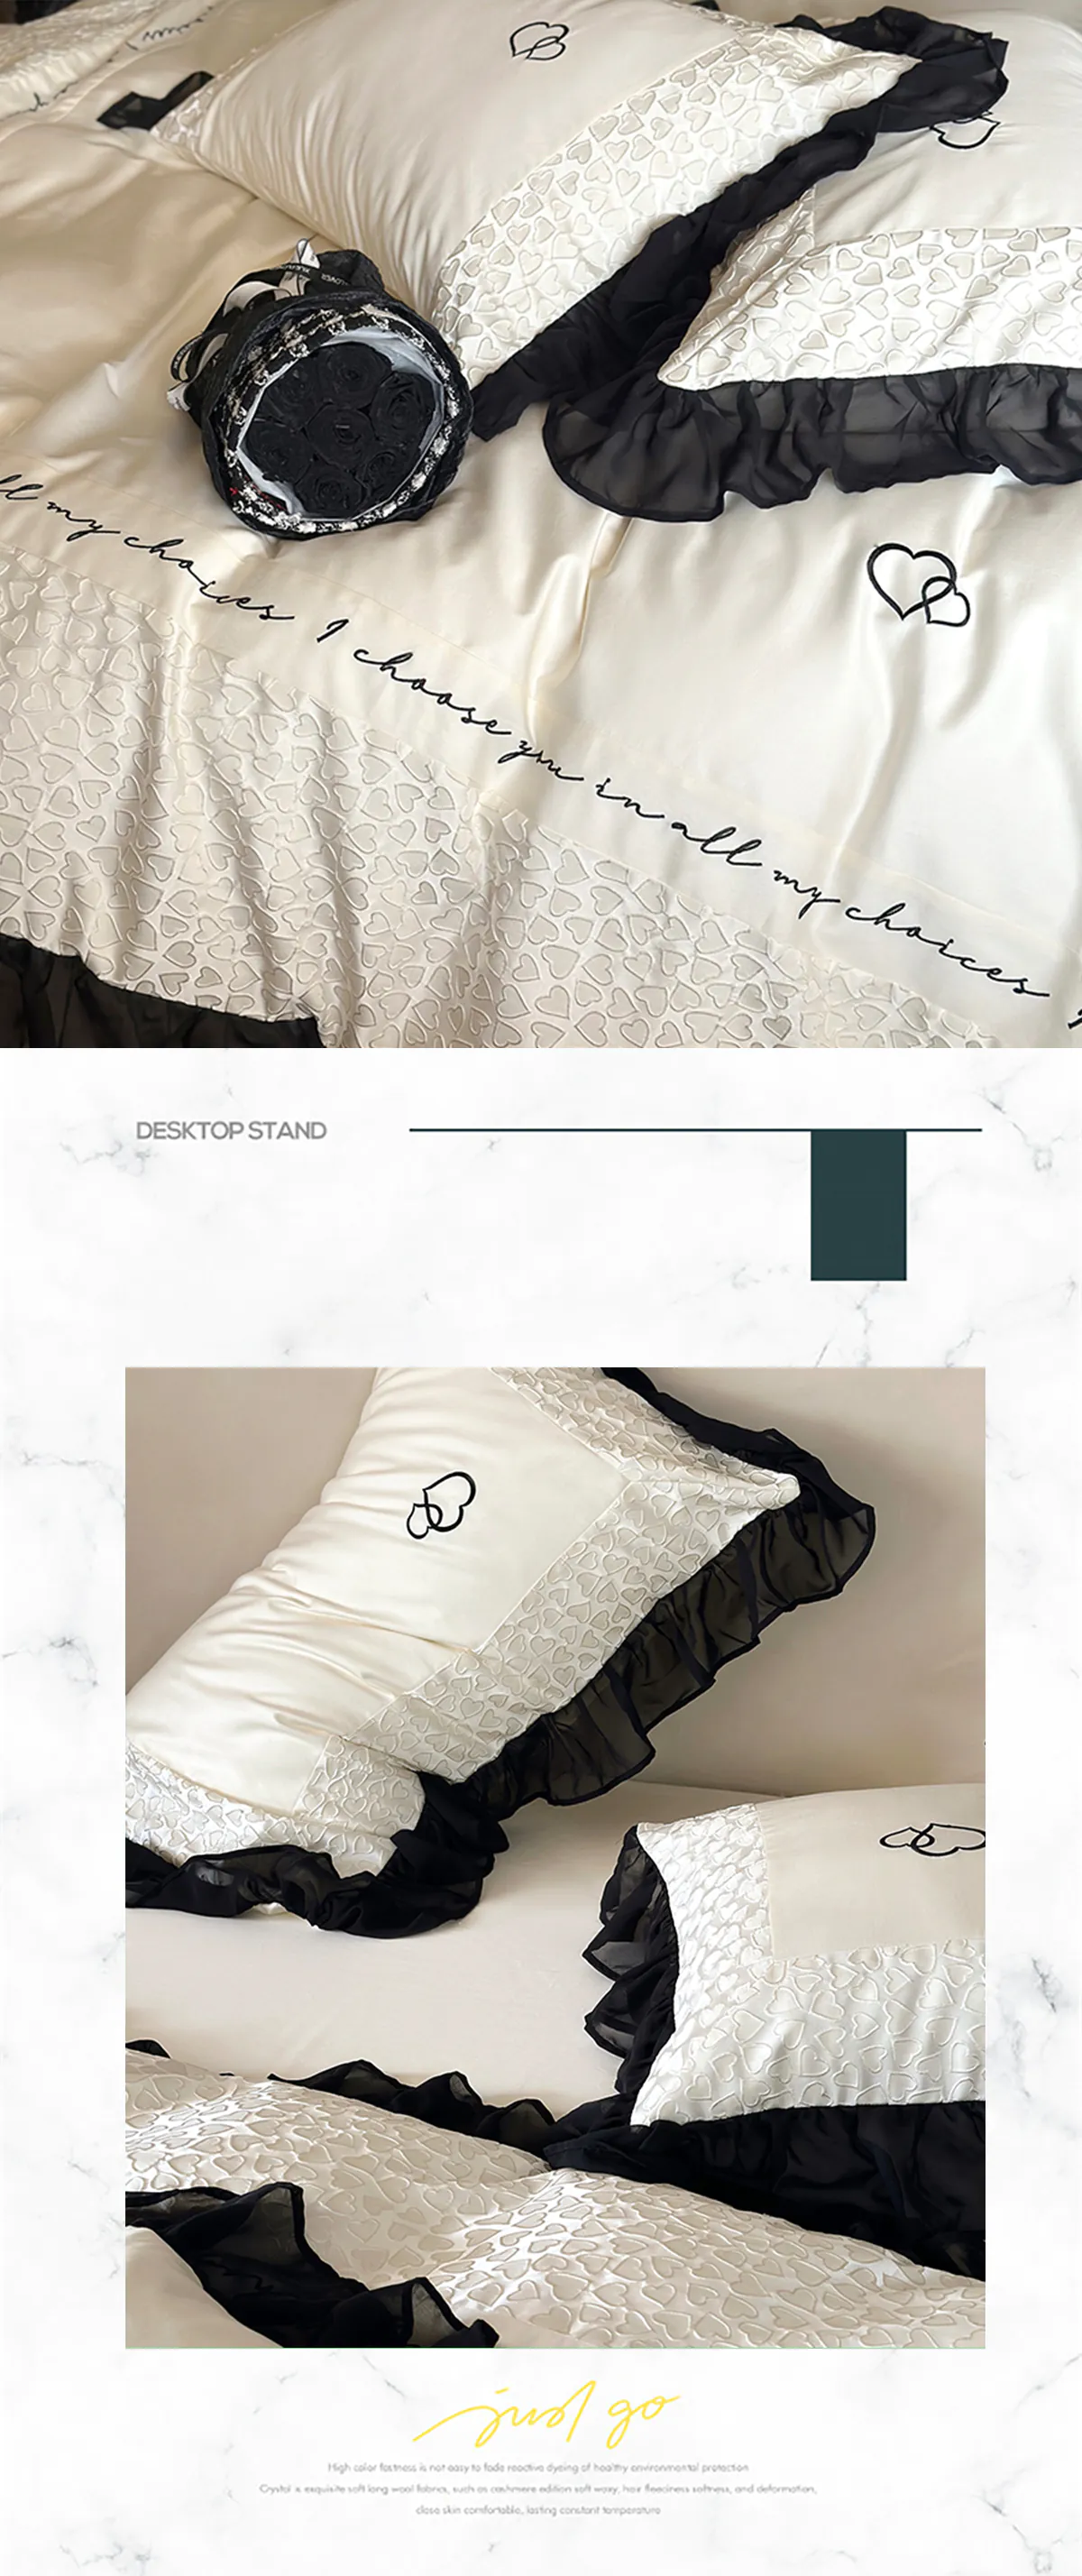 Sweet-Double-Strand-Australian-Cotton-Quilt-Cover-Bedding-4-Pcs-Set19